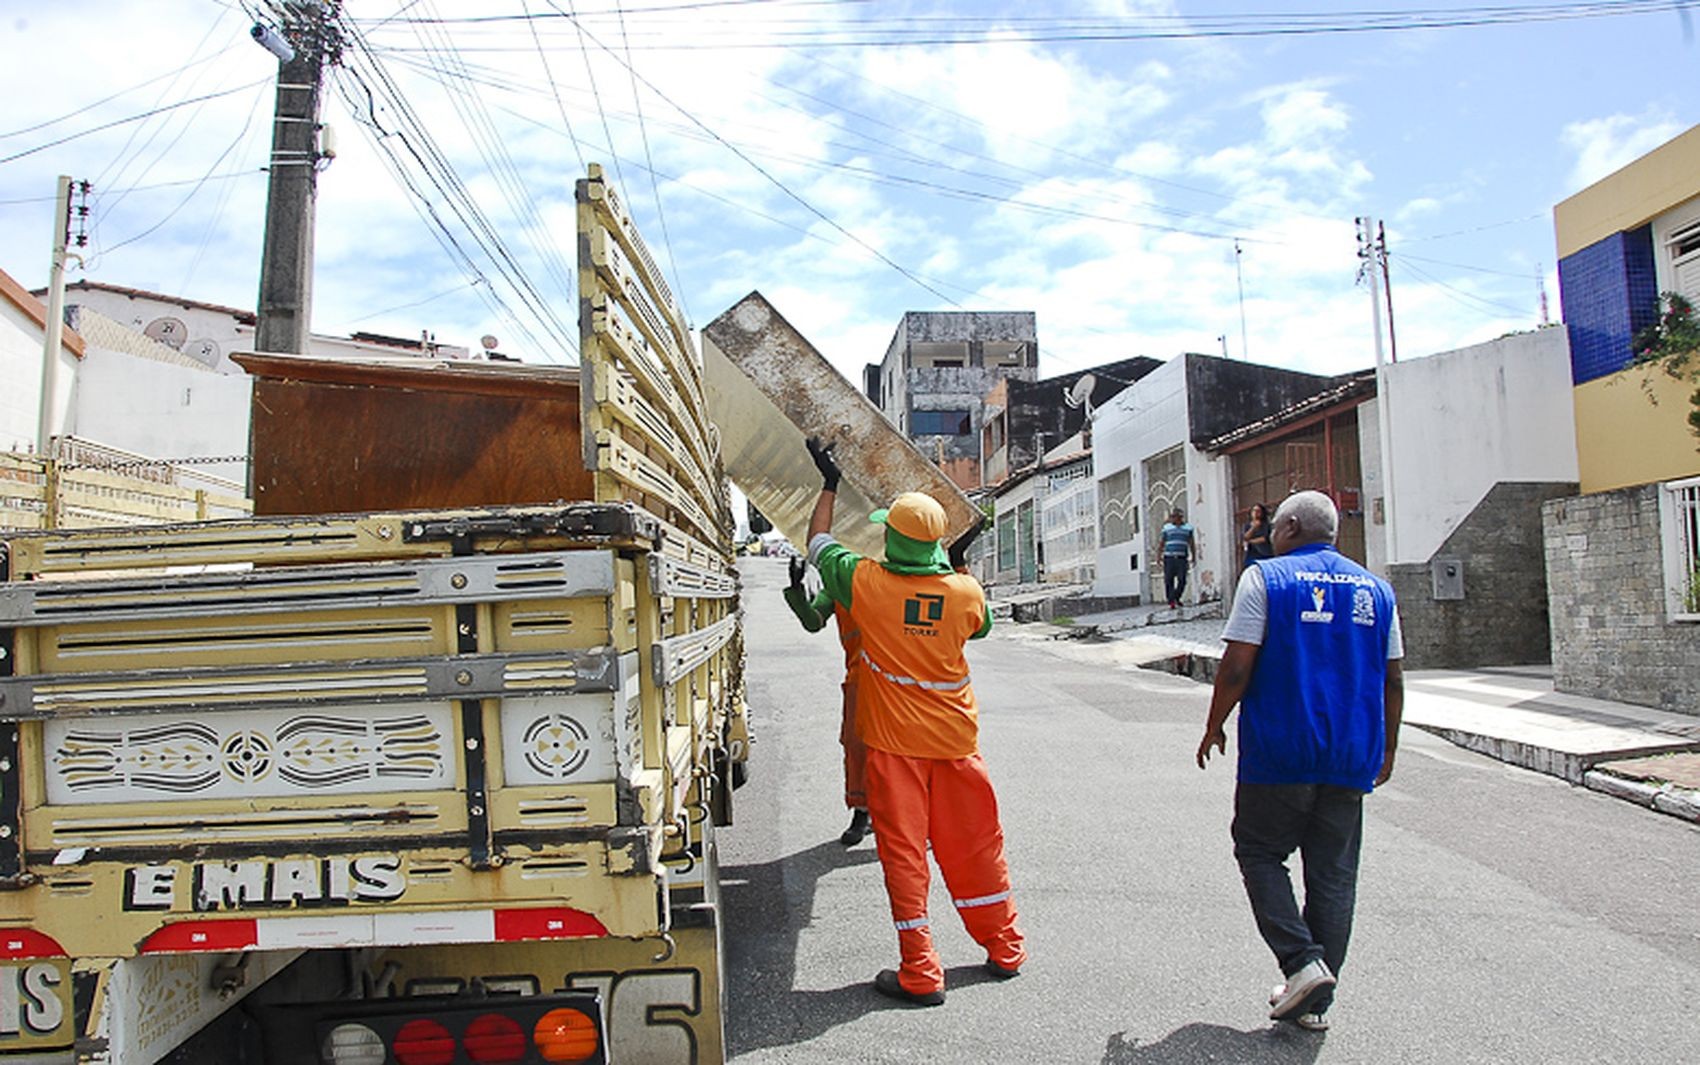 Serviço gratuito de coleta de material sem serventia será realizado em três bairros de Aracaju; saiba como solicitar